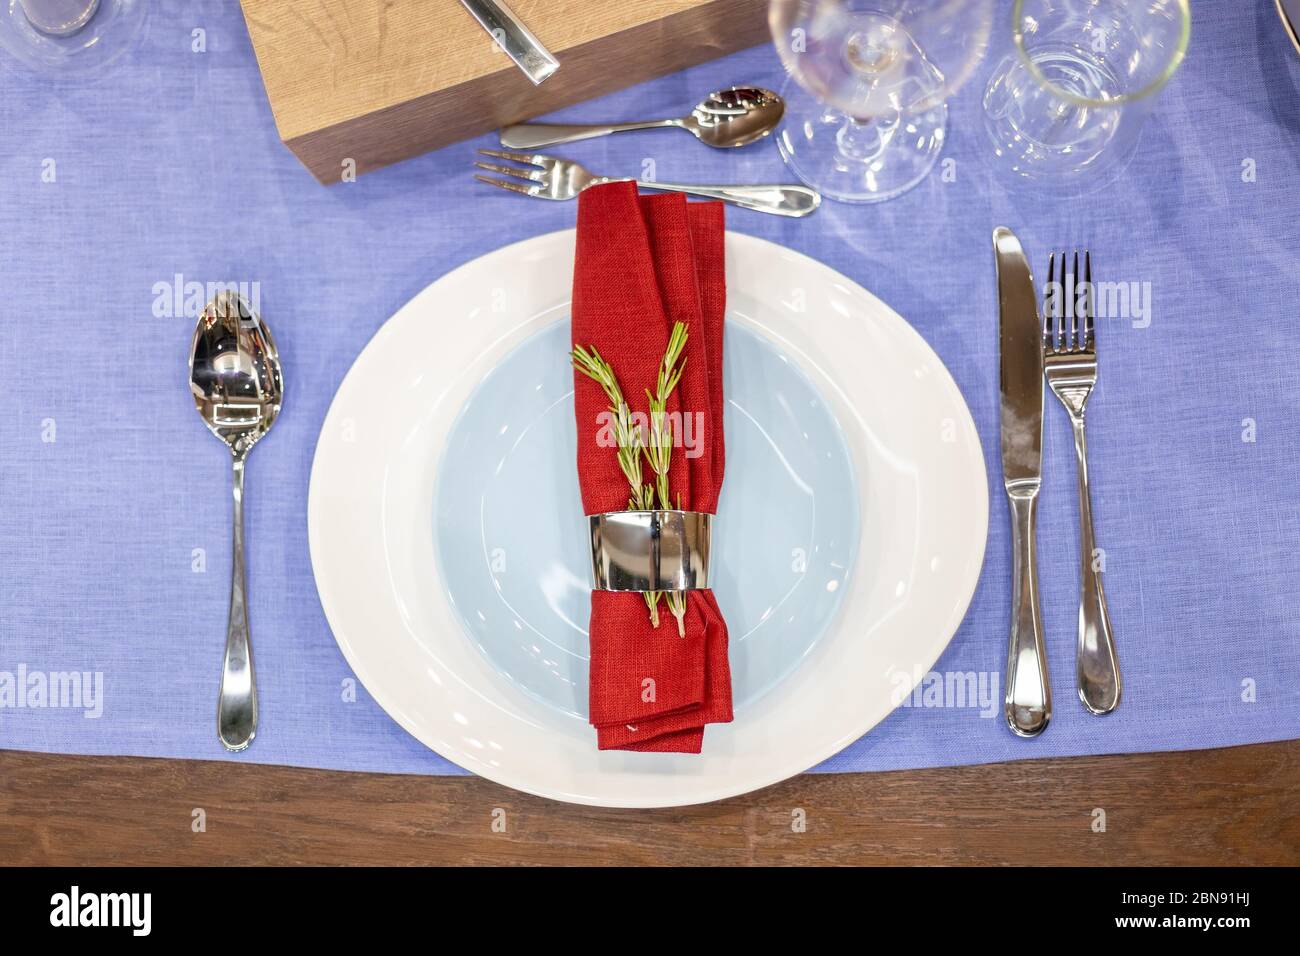 table avec nappe bleue, plaque blanche et bleue, serviette rouge dans un  support en acier, appareils en acier, gobelets en verre. vue de dessus,  gros plan Photo Stock - Alamy